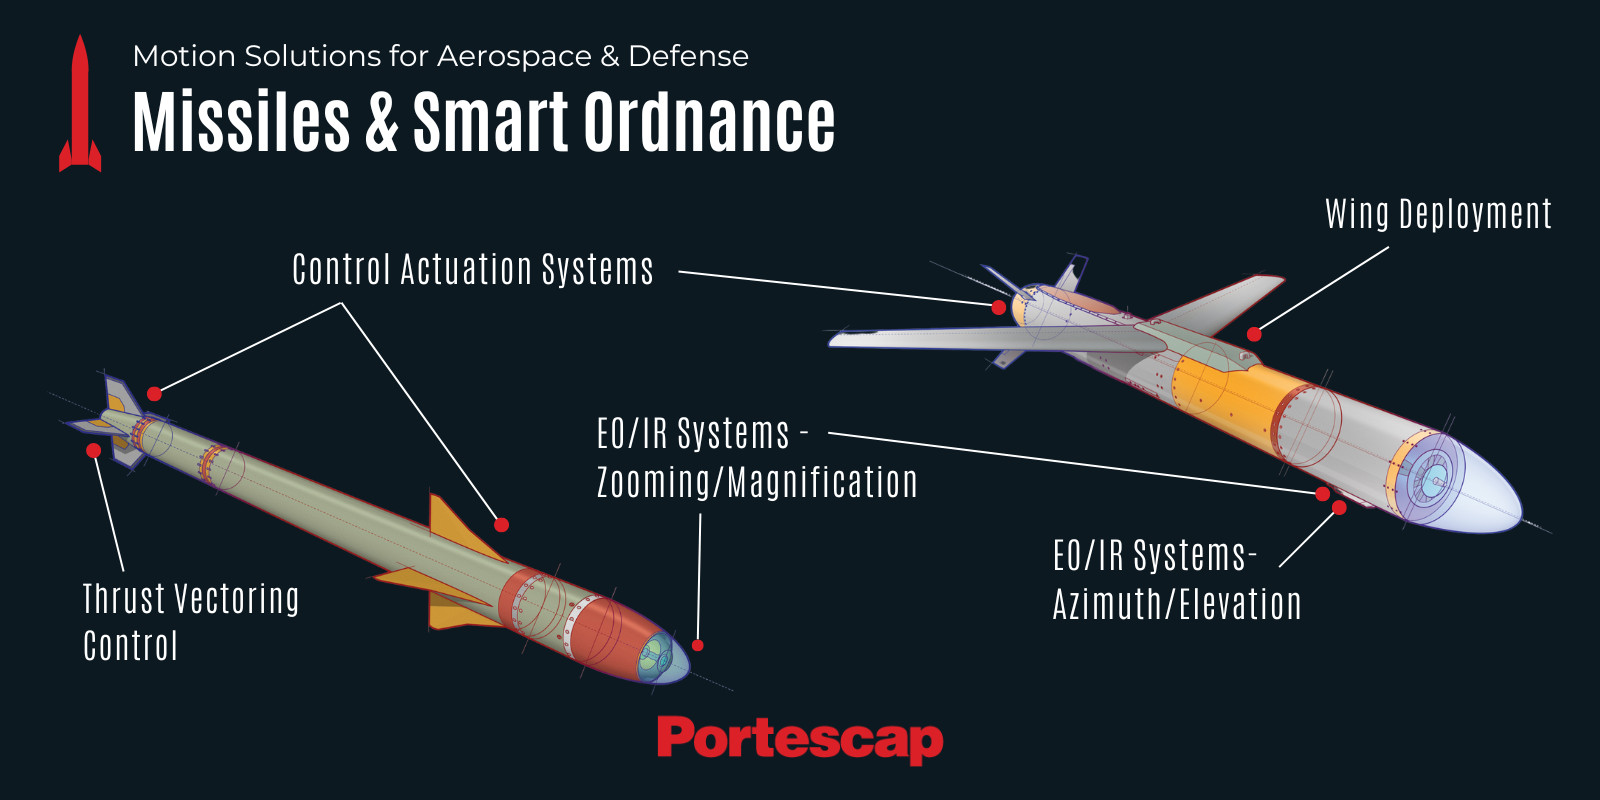 Portescap motion solutions have numerous applications in smart munition development.